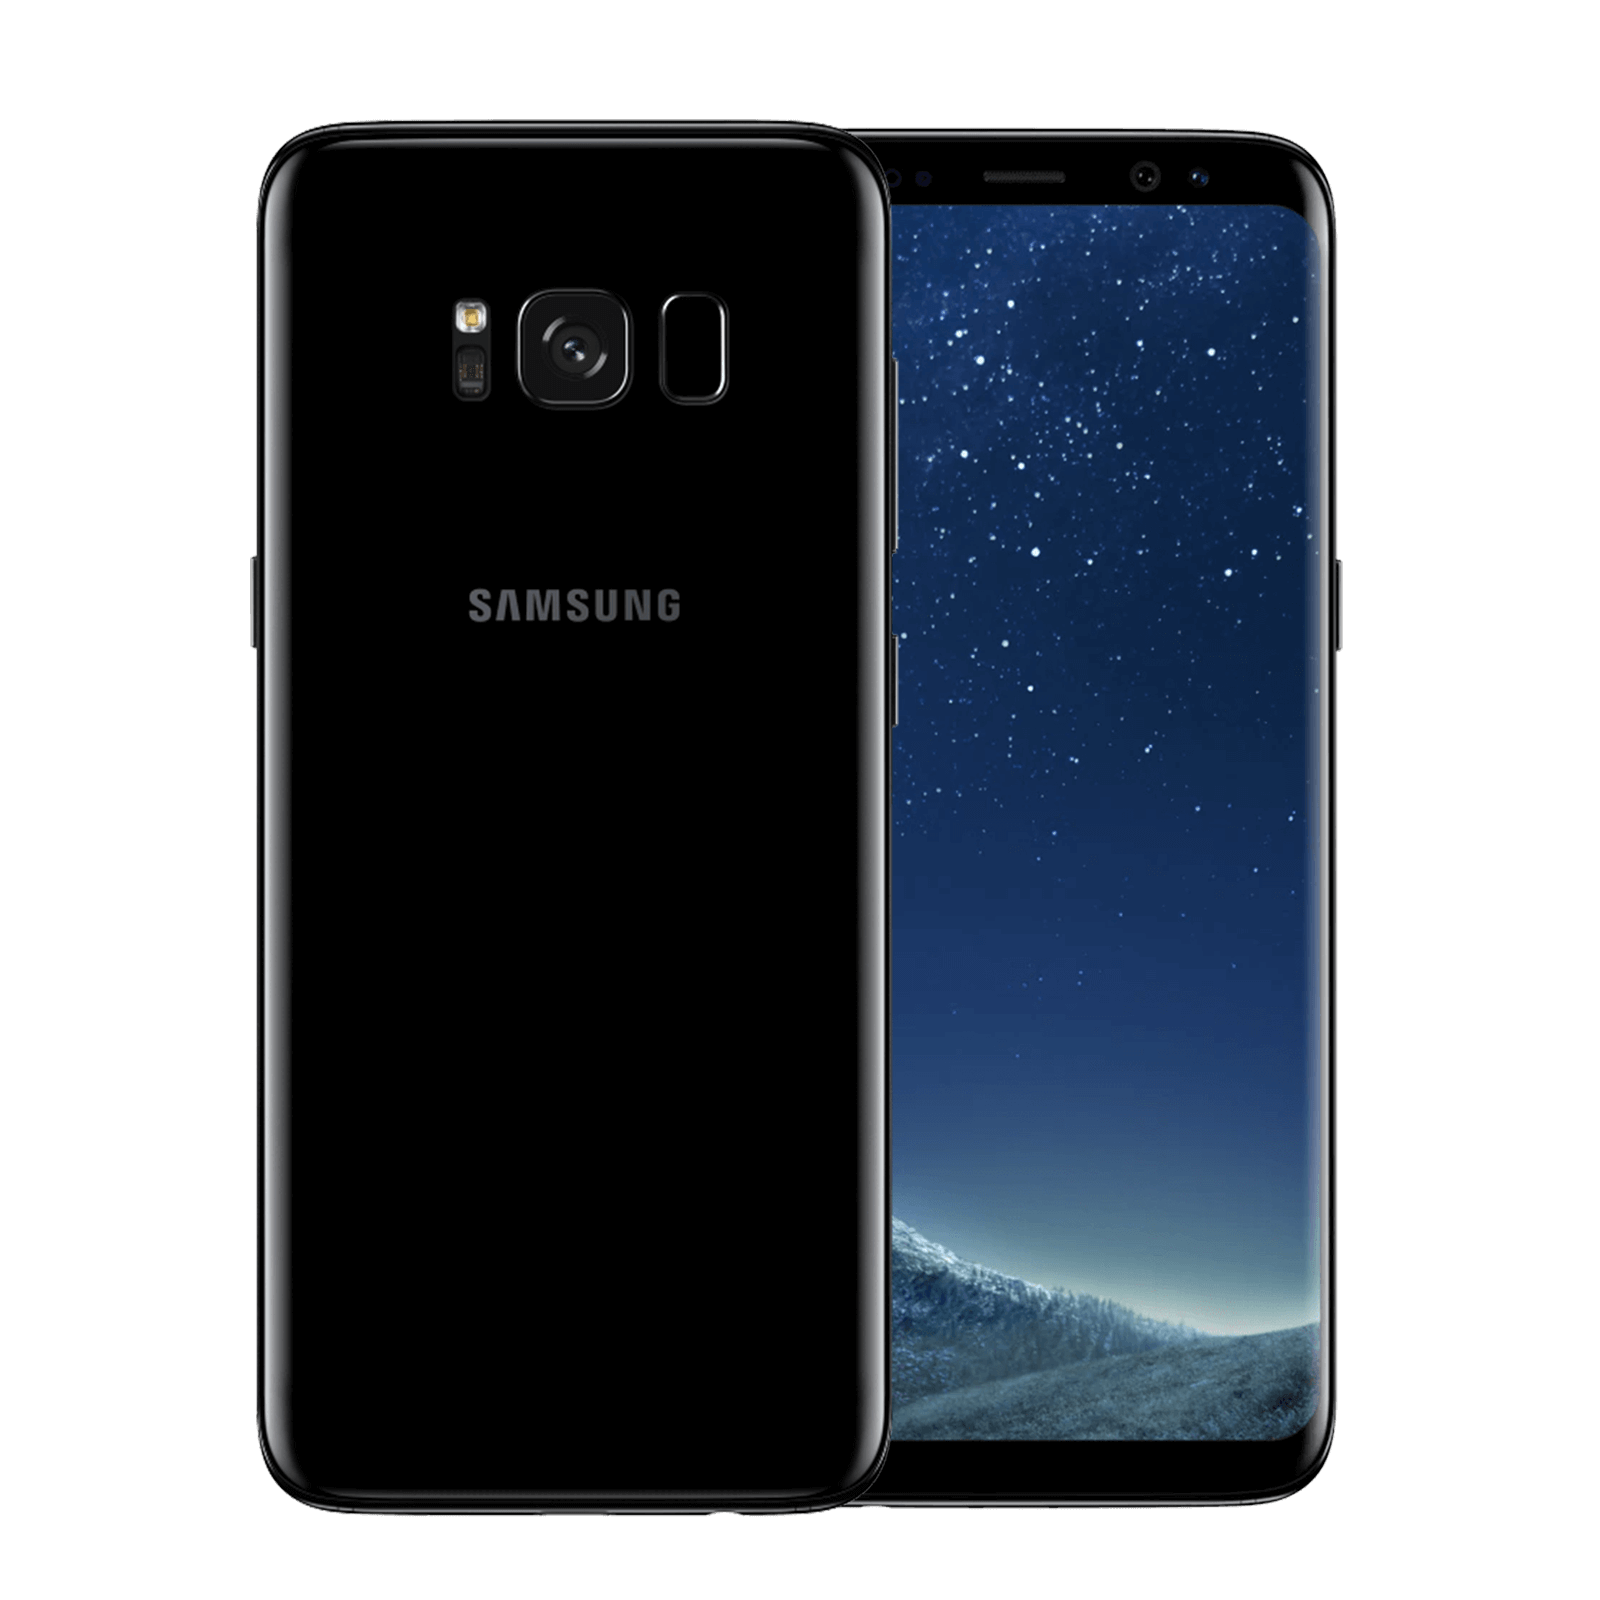 Samsung Galaxy S8 64GB Black Fair - Unlocked